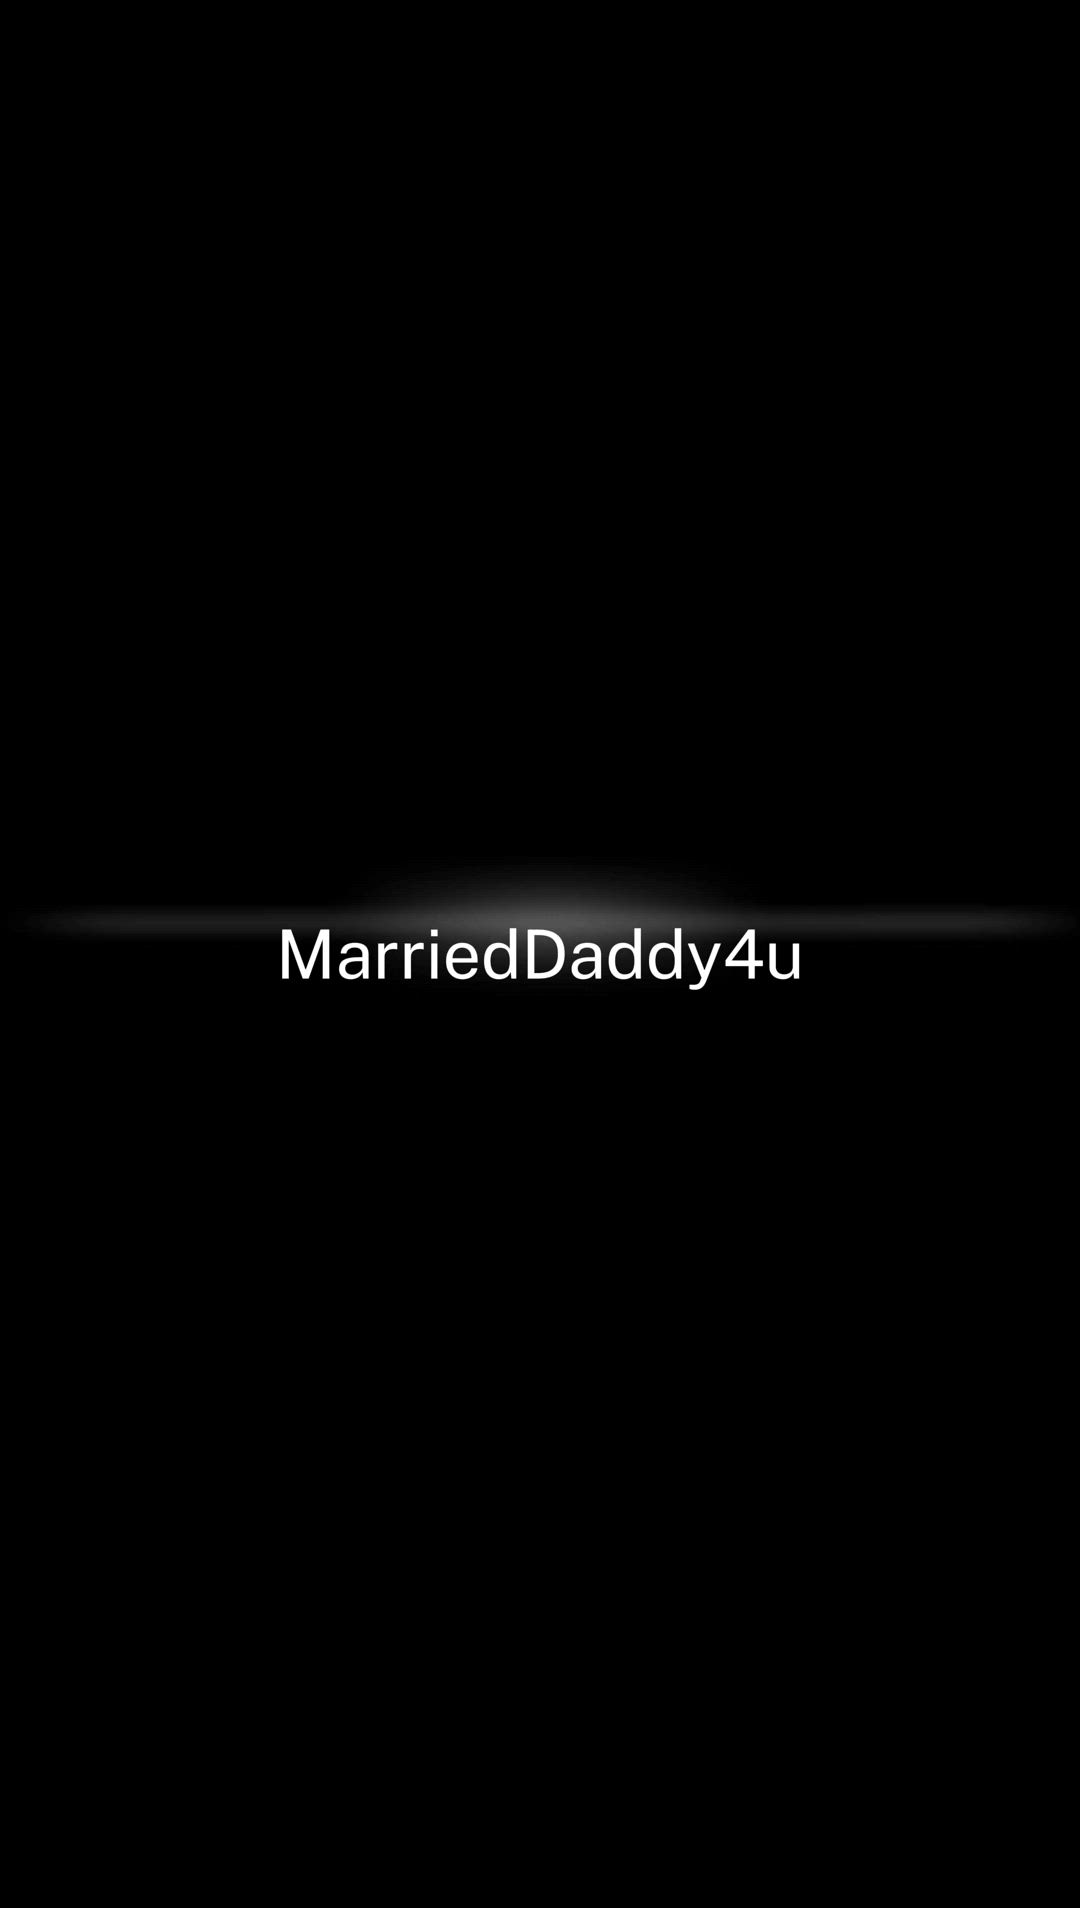 Amateur porn video with onlyfans model marrieddaddy4u <strong>@marrieddady4u</strong>